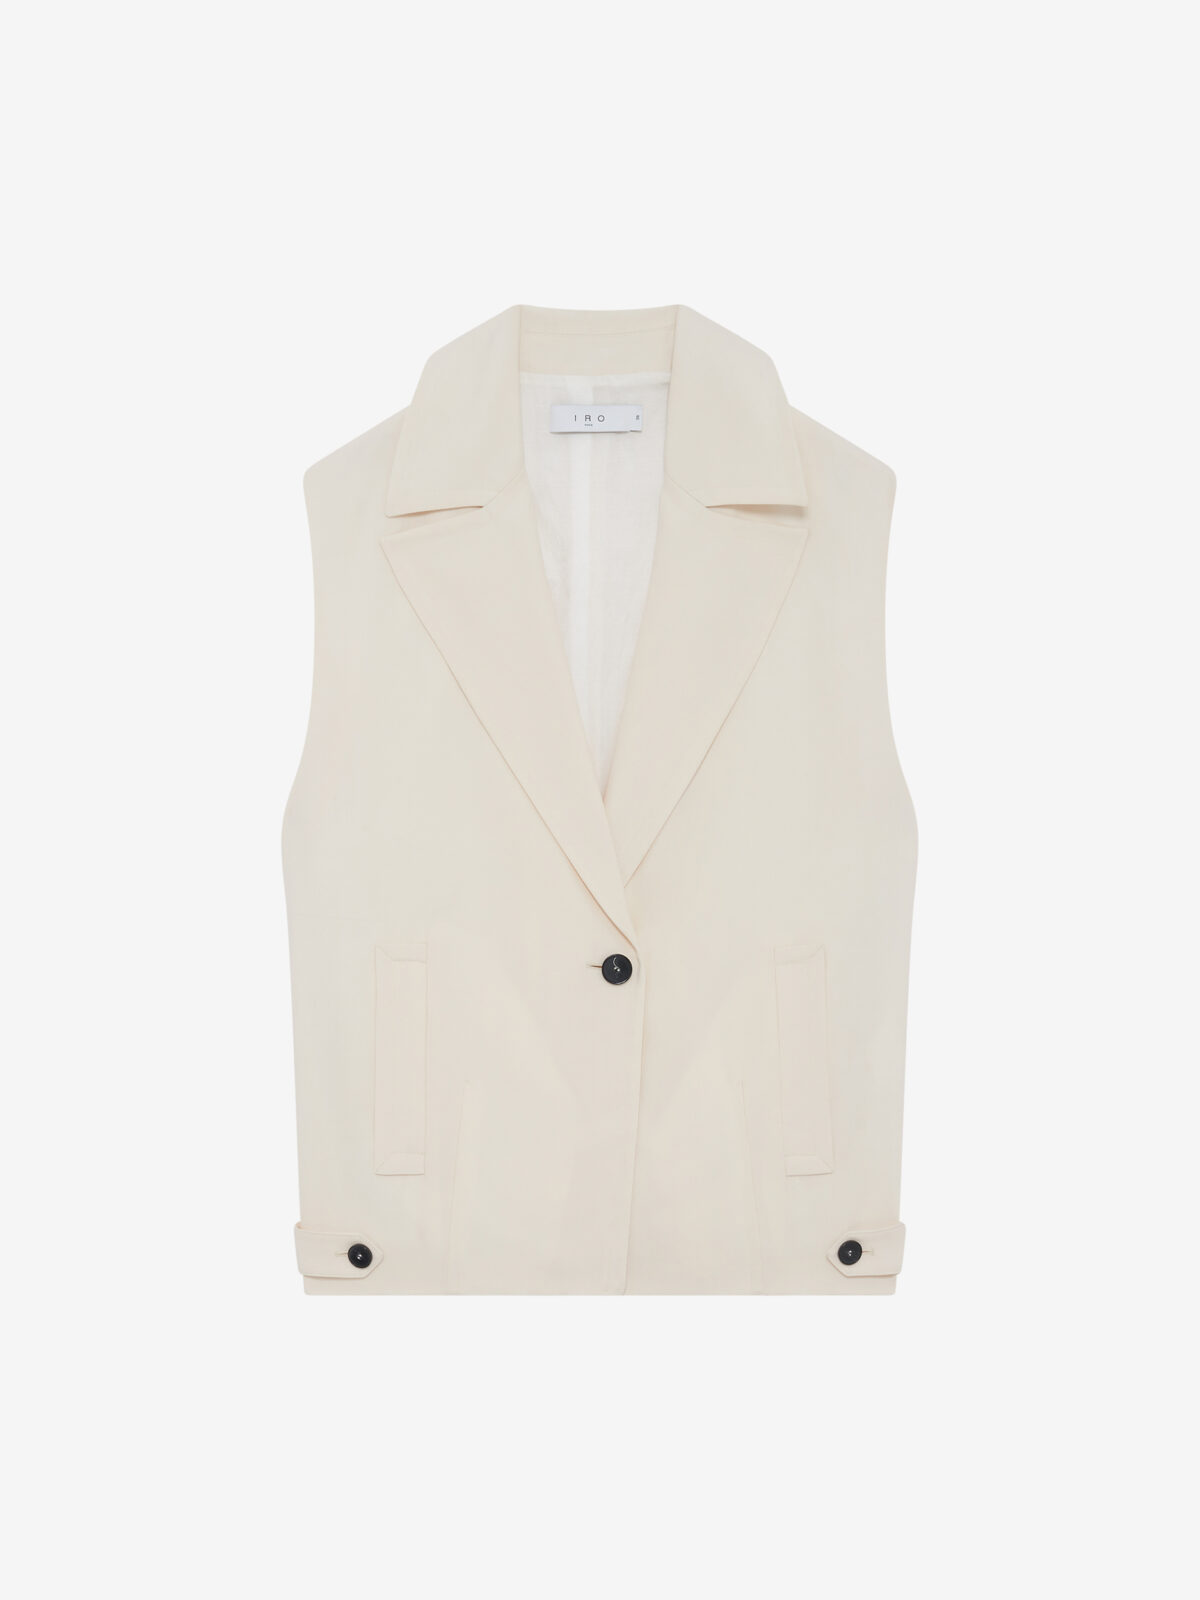 WP07KARINE24S-ECR01-karine-sleeveless-jacket-oversized-suit-iro-paris-matchoxathens